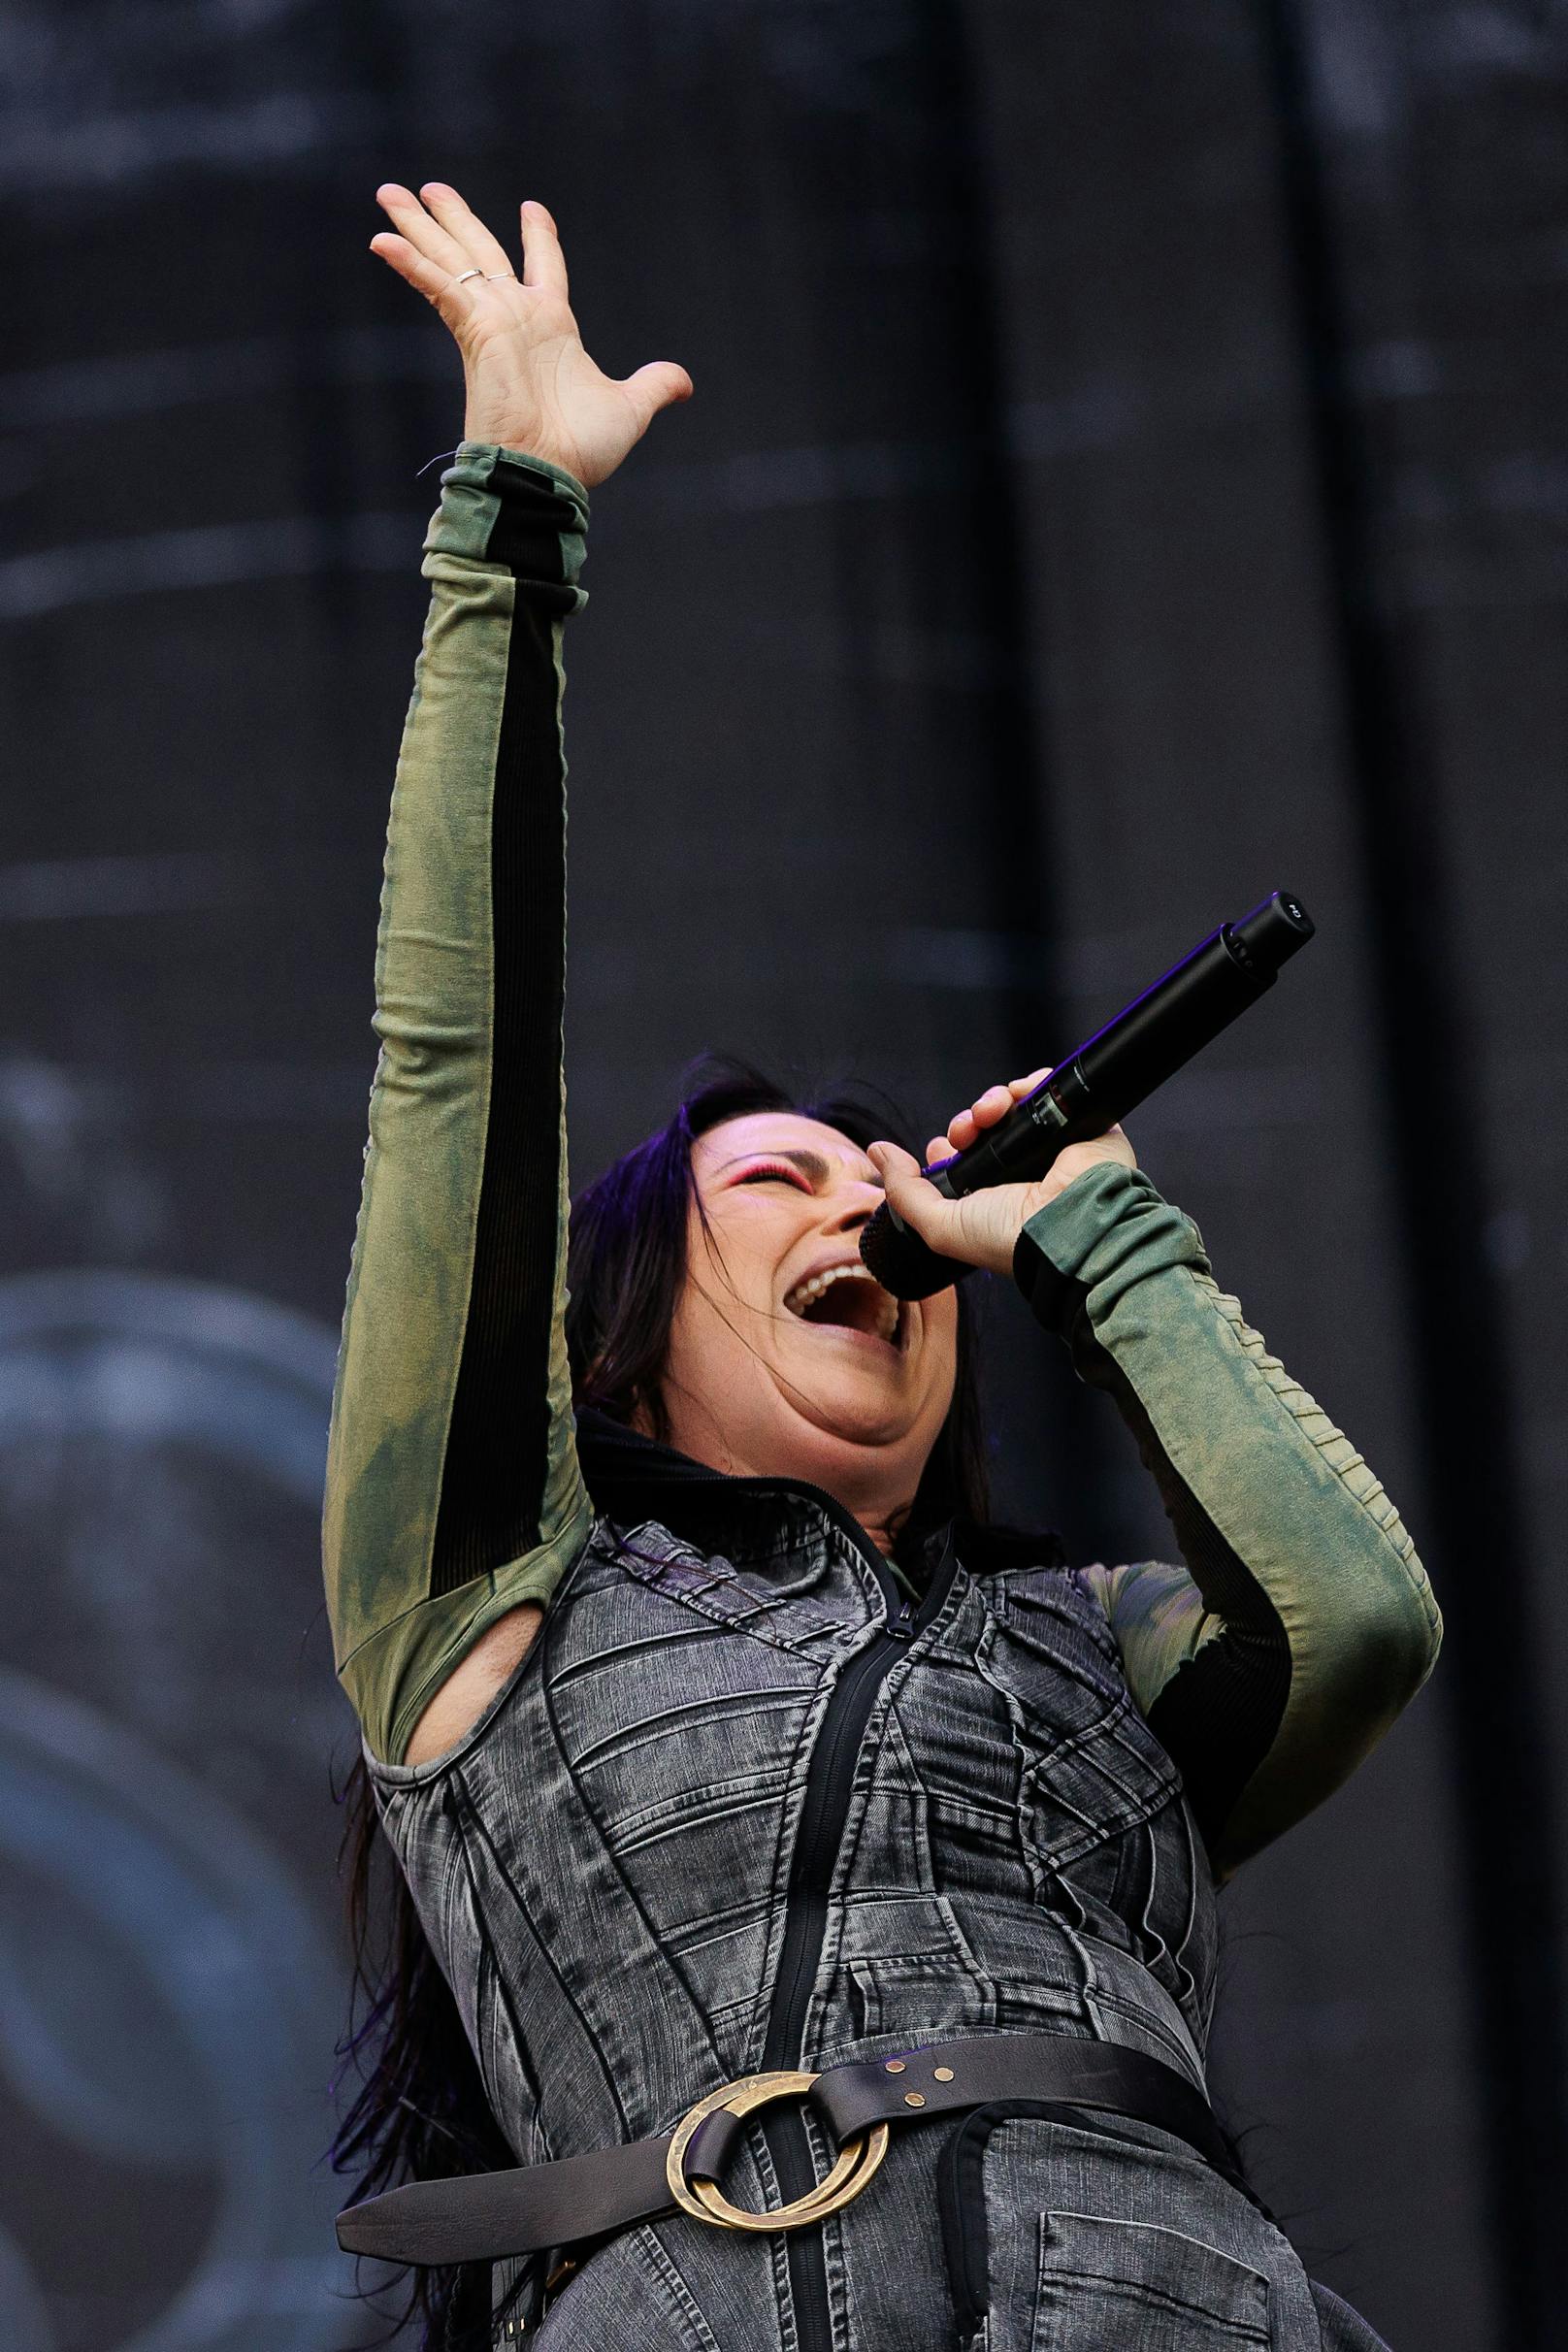 Sängerin Amy Lee von der Band "Evanescence" während eines Konzertes auf der "Blue Stage".